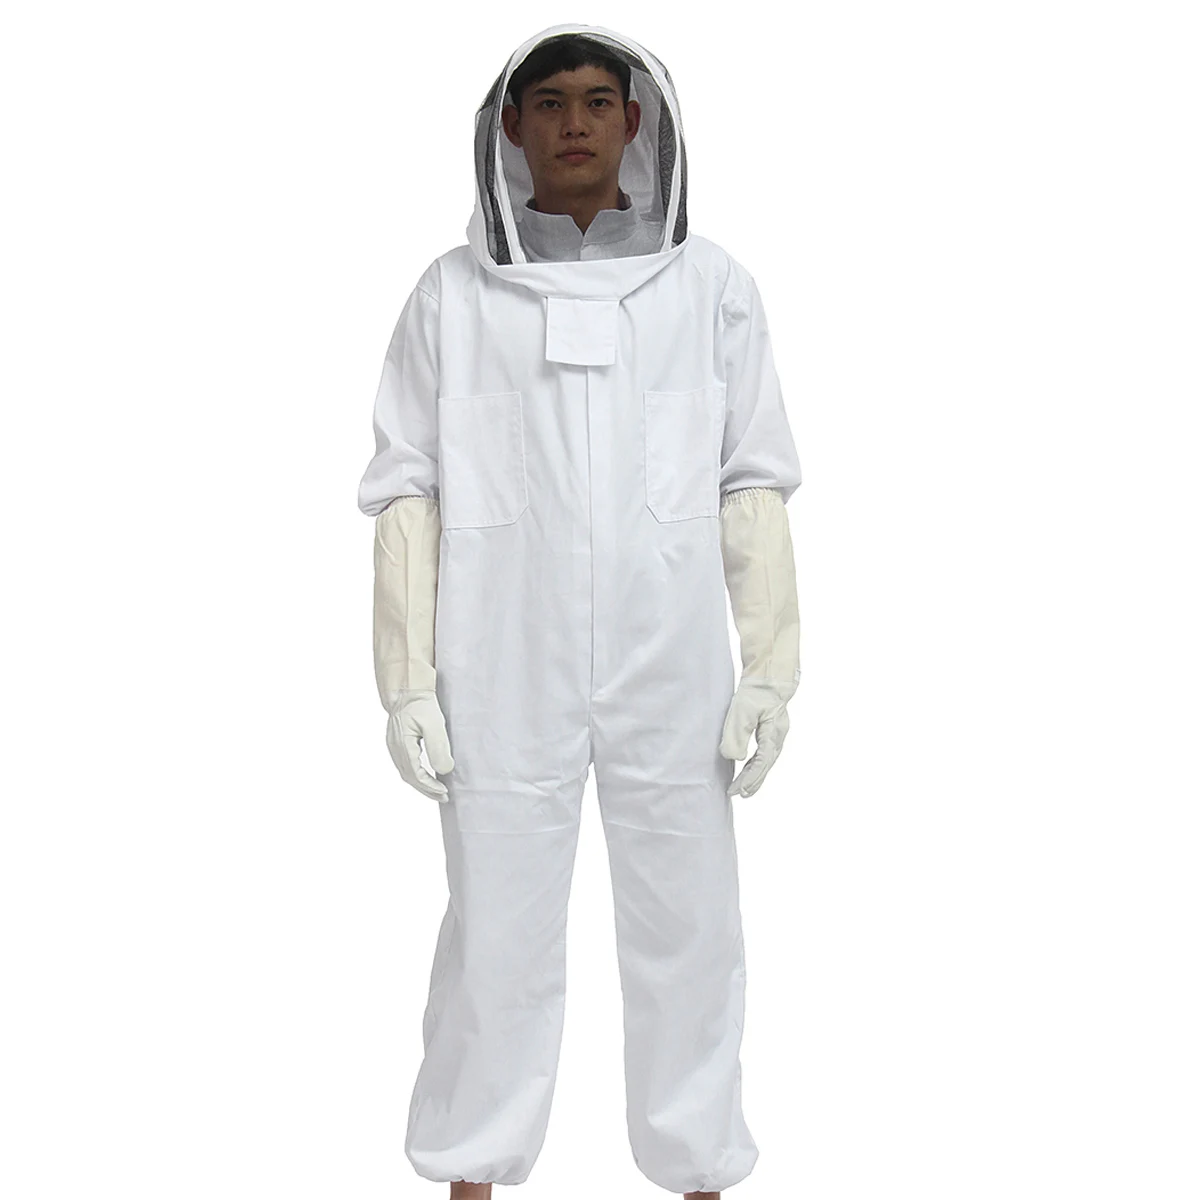 Костюм пчеловода, костюм пчелы, костюм+ защитные перчатки из козьей кожи для пчеловодства, безопасная одежда